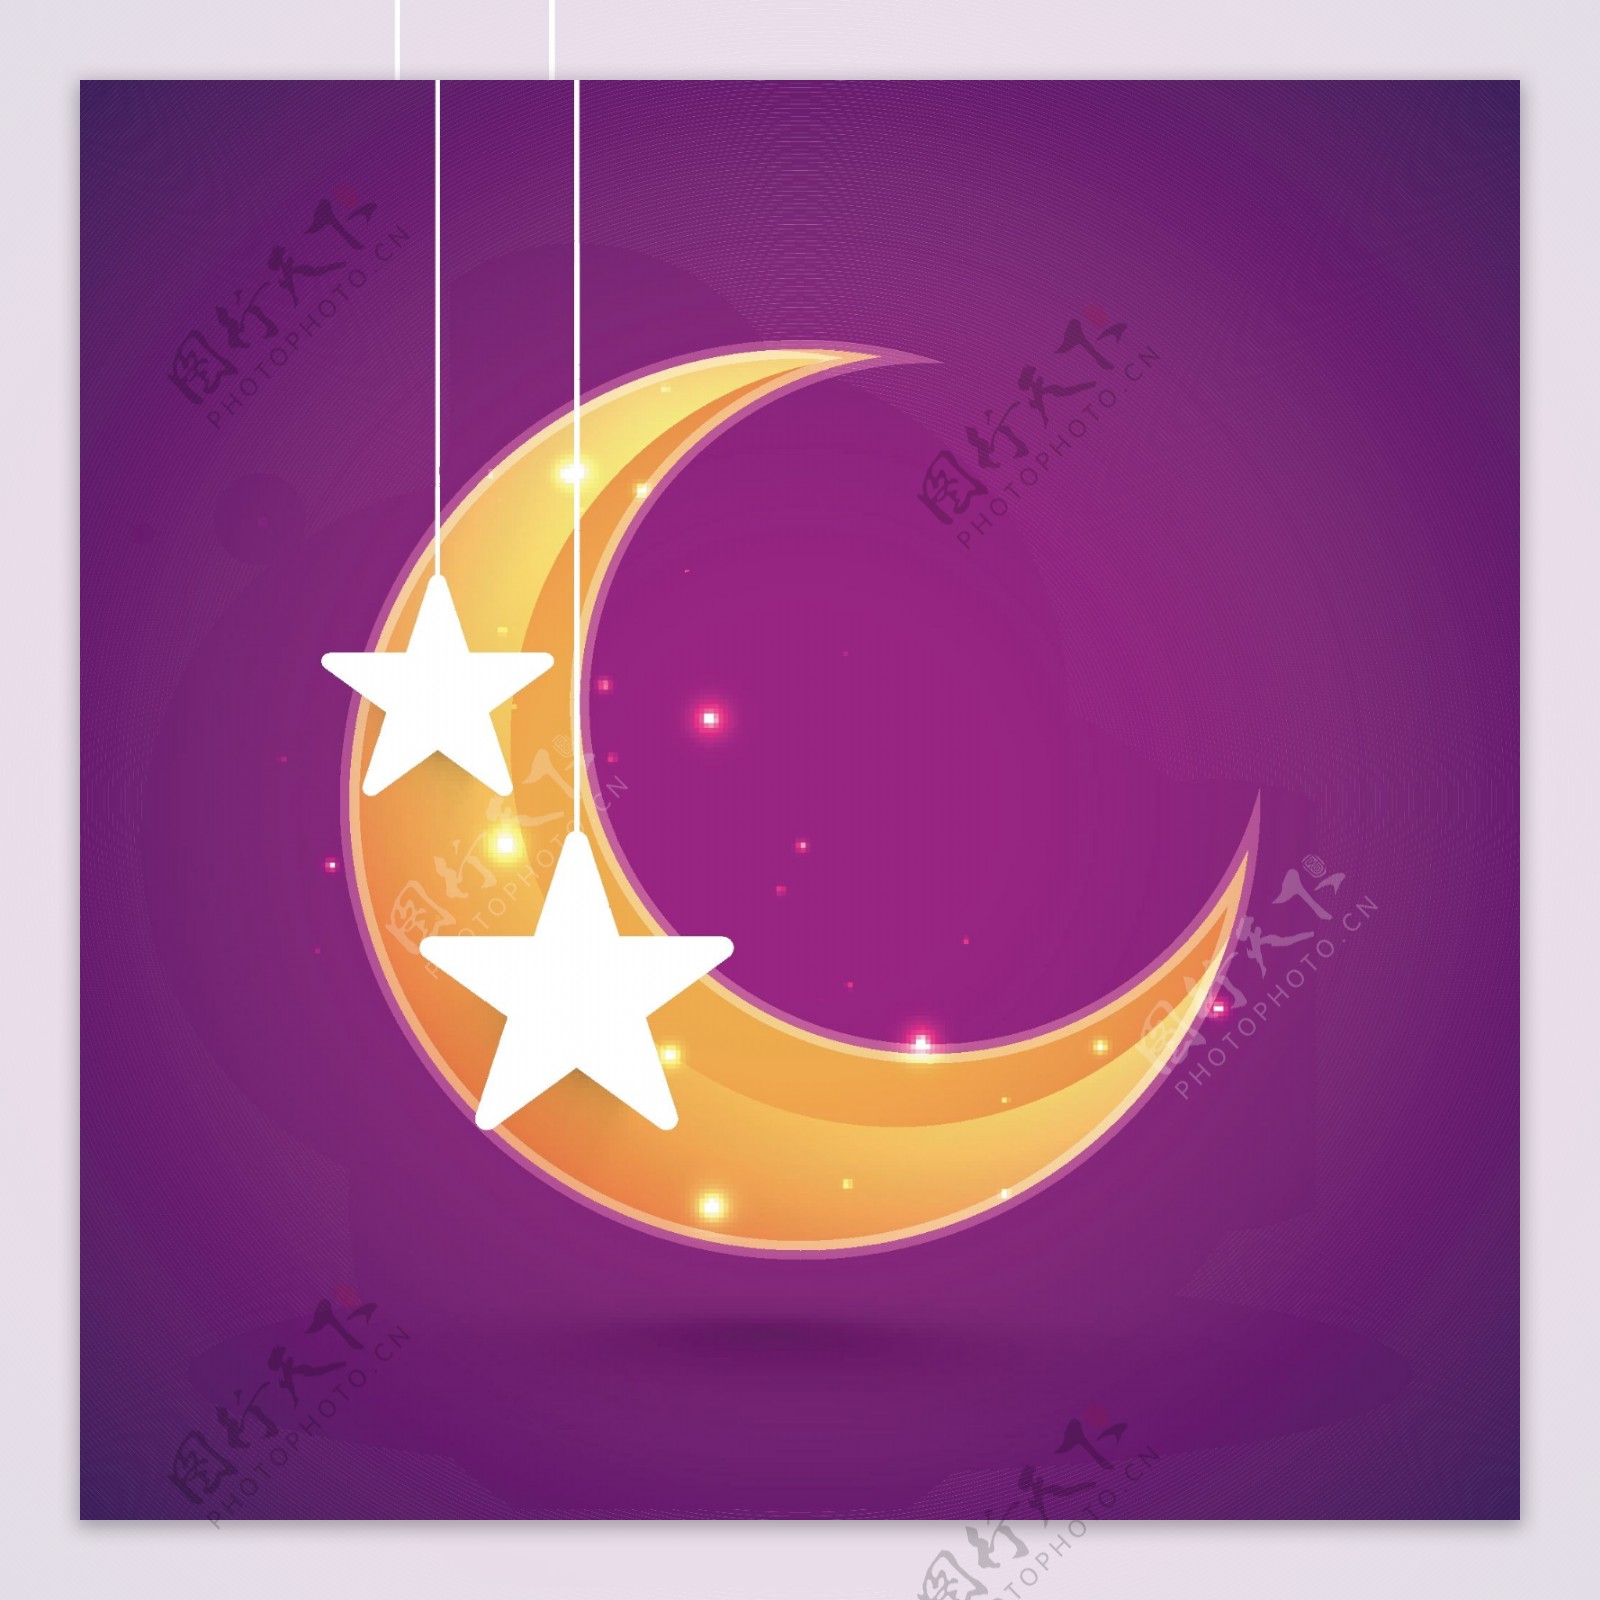 明亮的新月和紫色背景上的银星为伊斯兰节日EidMubarak庆典而设